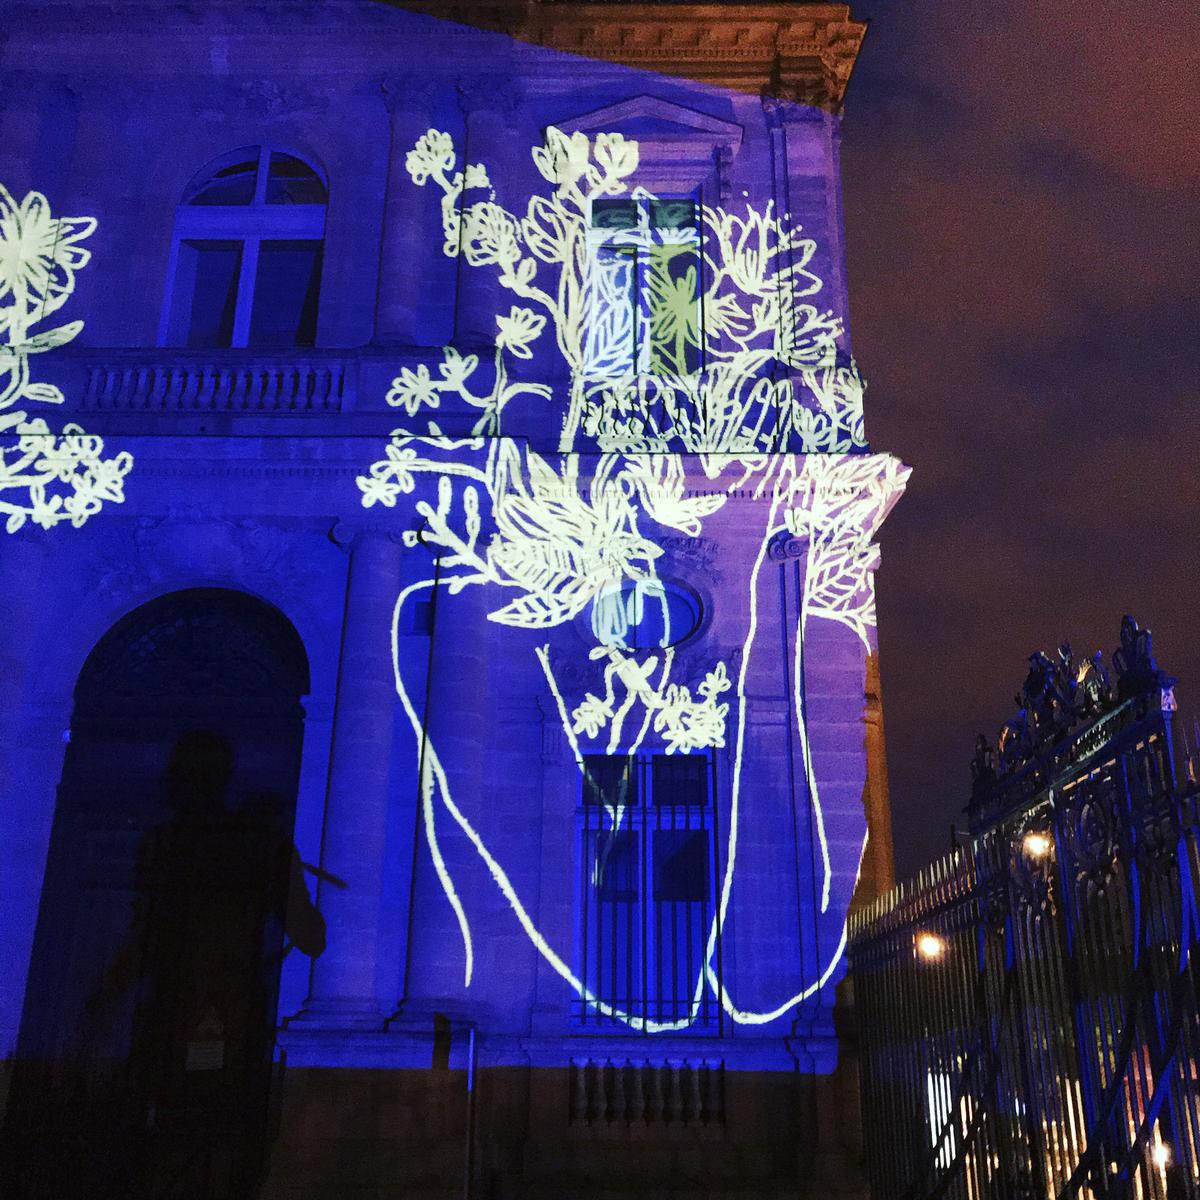 Mapping vidéo sur la façade de l’Hôtel de ville de Bordeaux.